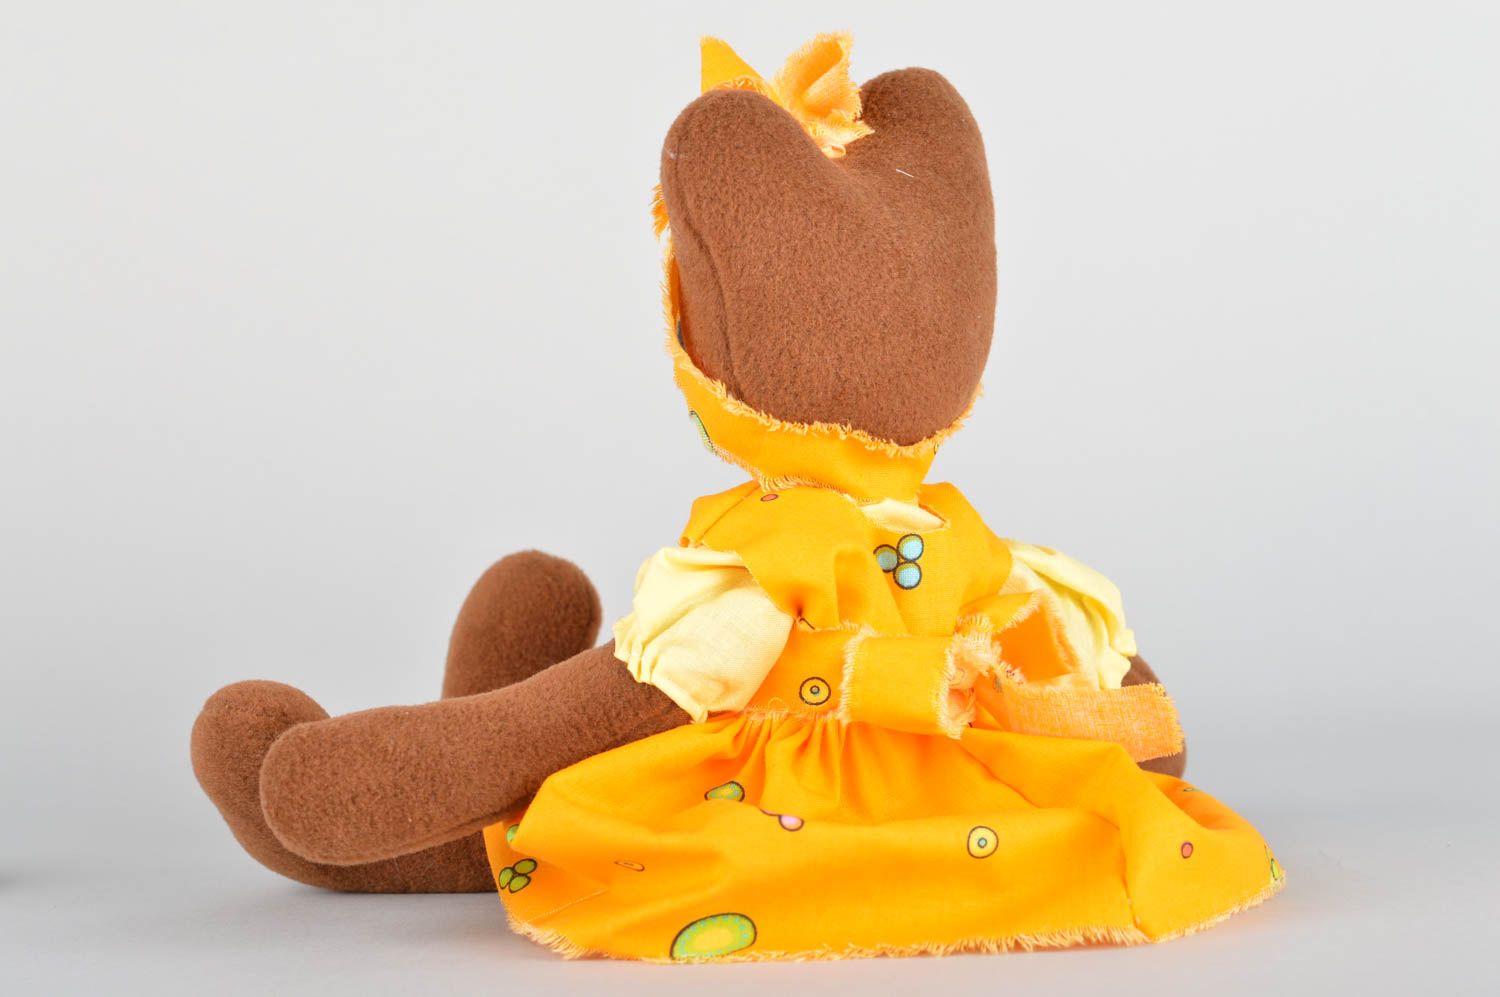 Kuscheltier Bär handgemacht im Kleid weiches Kuscheltier Geschenk für Kind schön foto 2